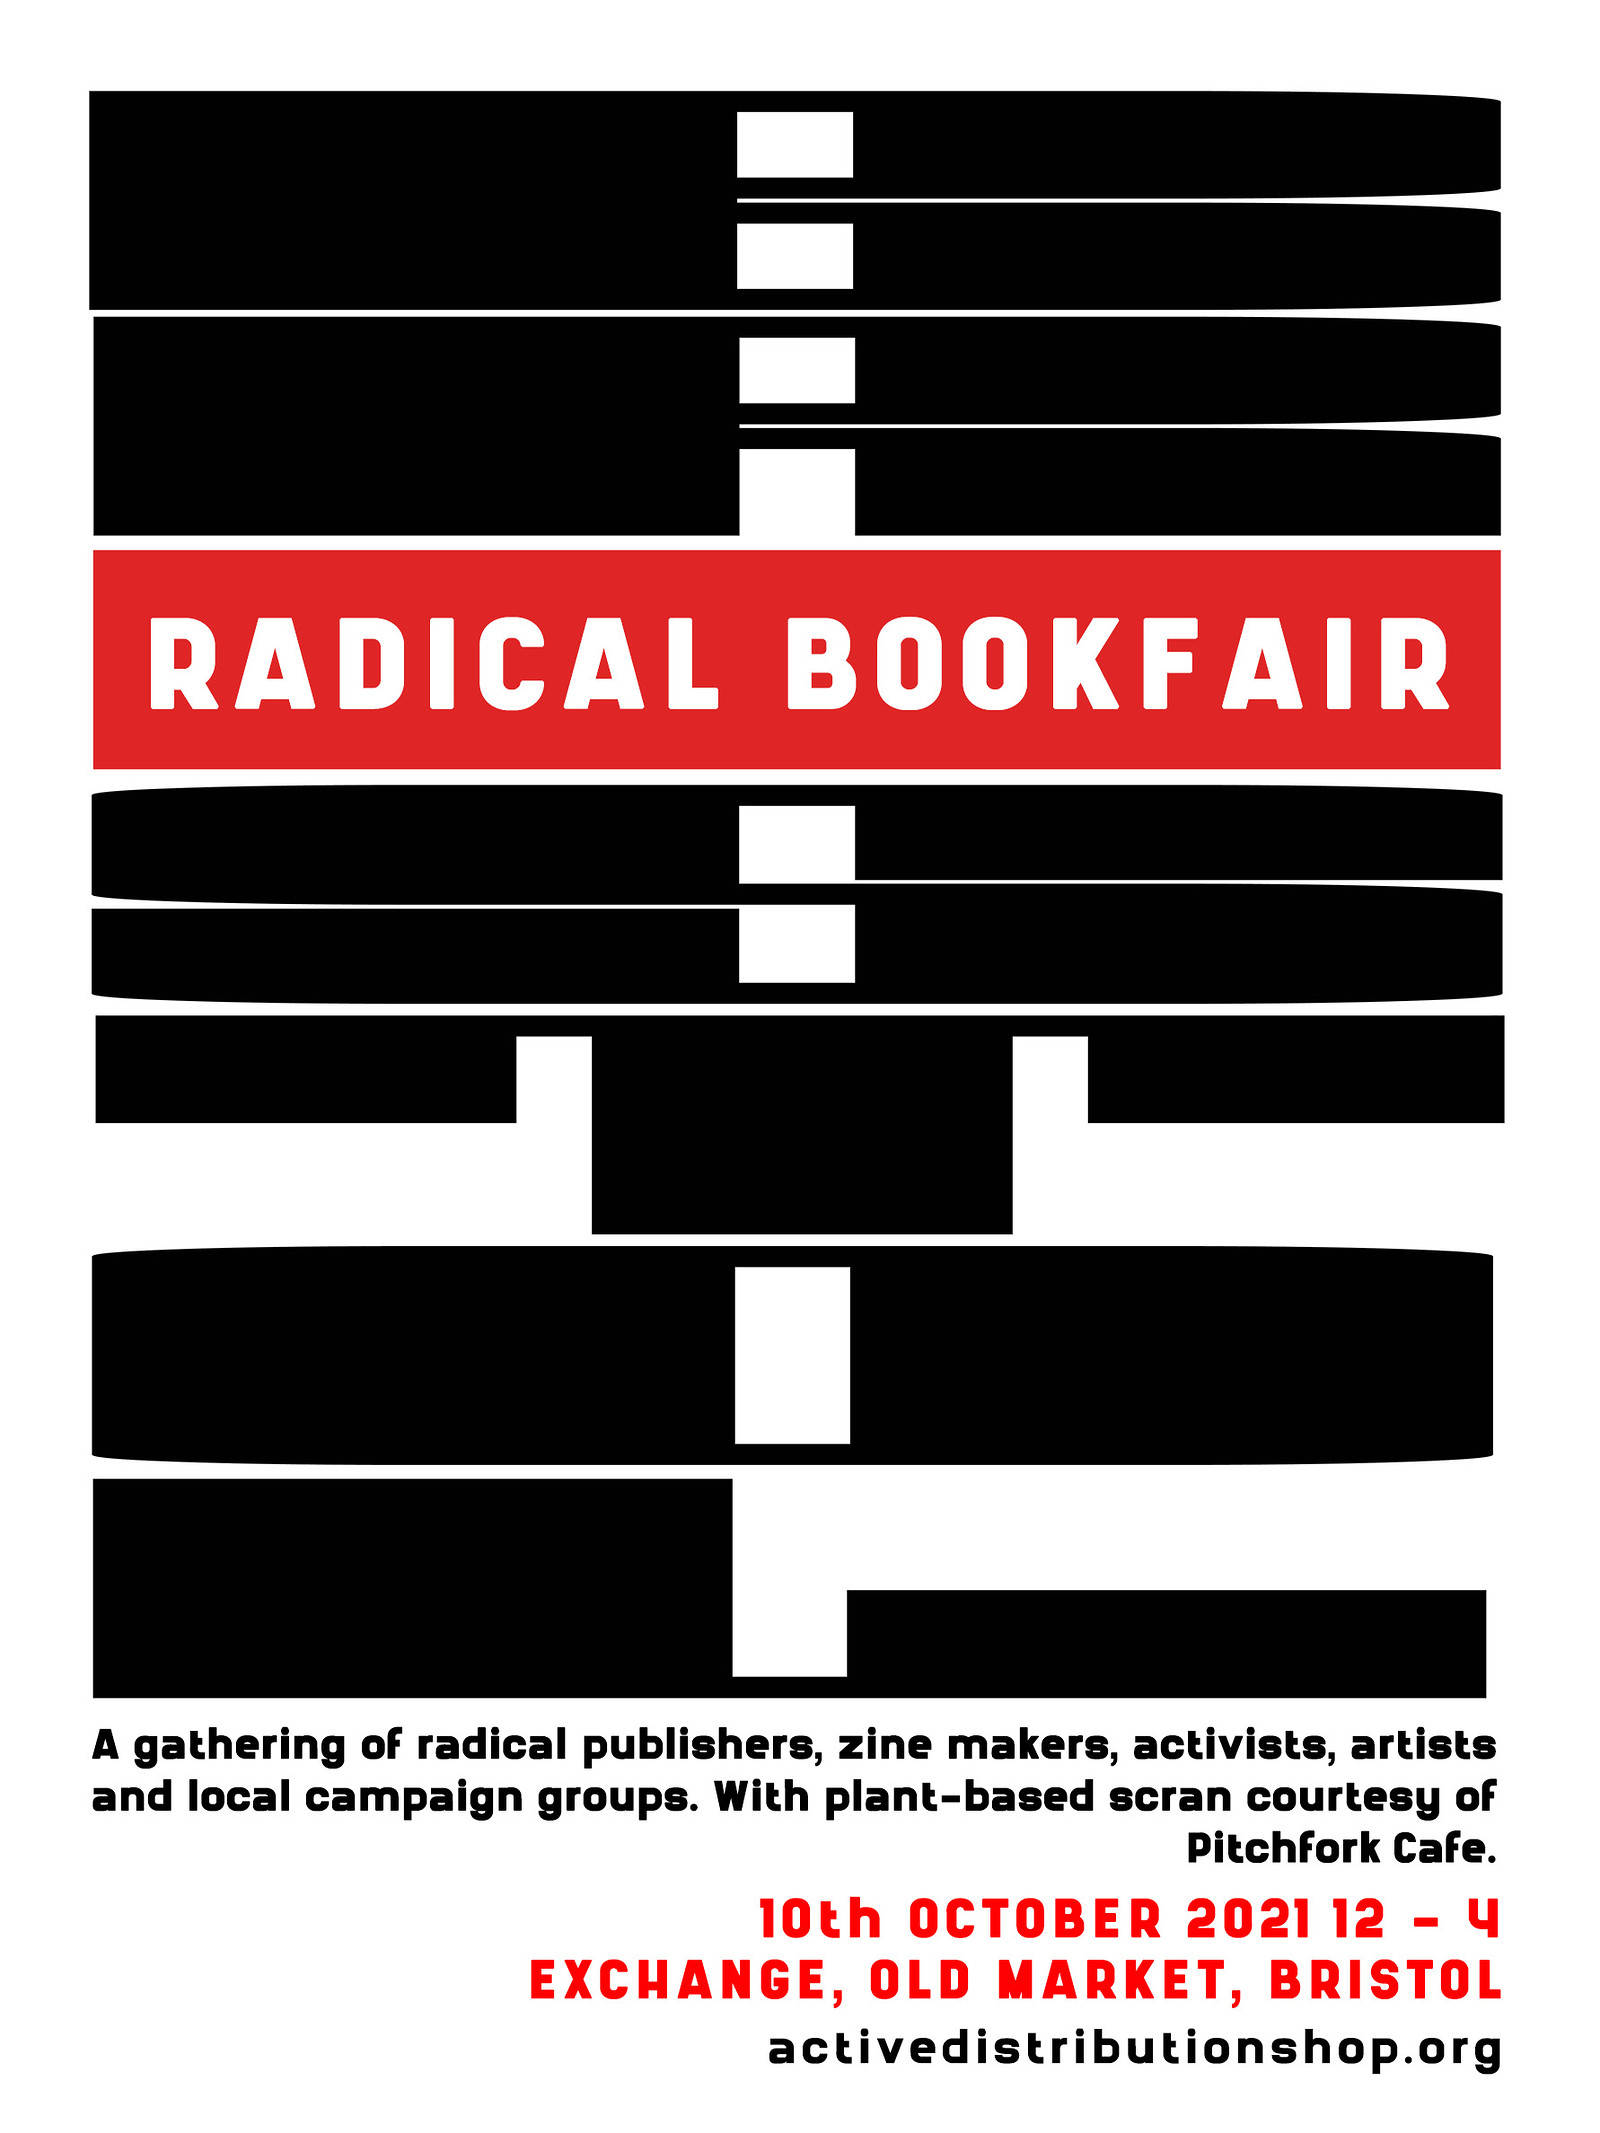 Radical Bookfair at Exchange